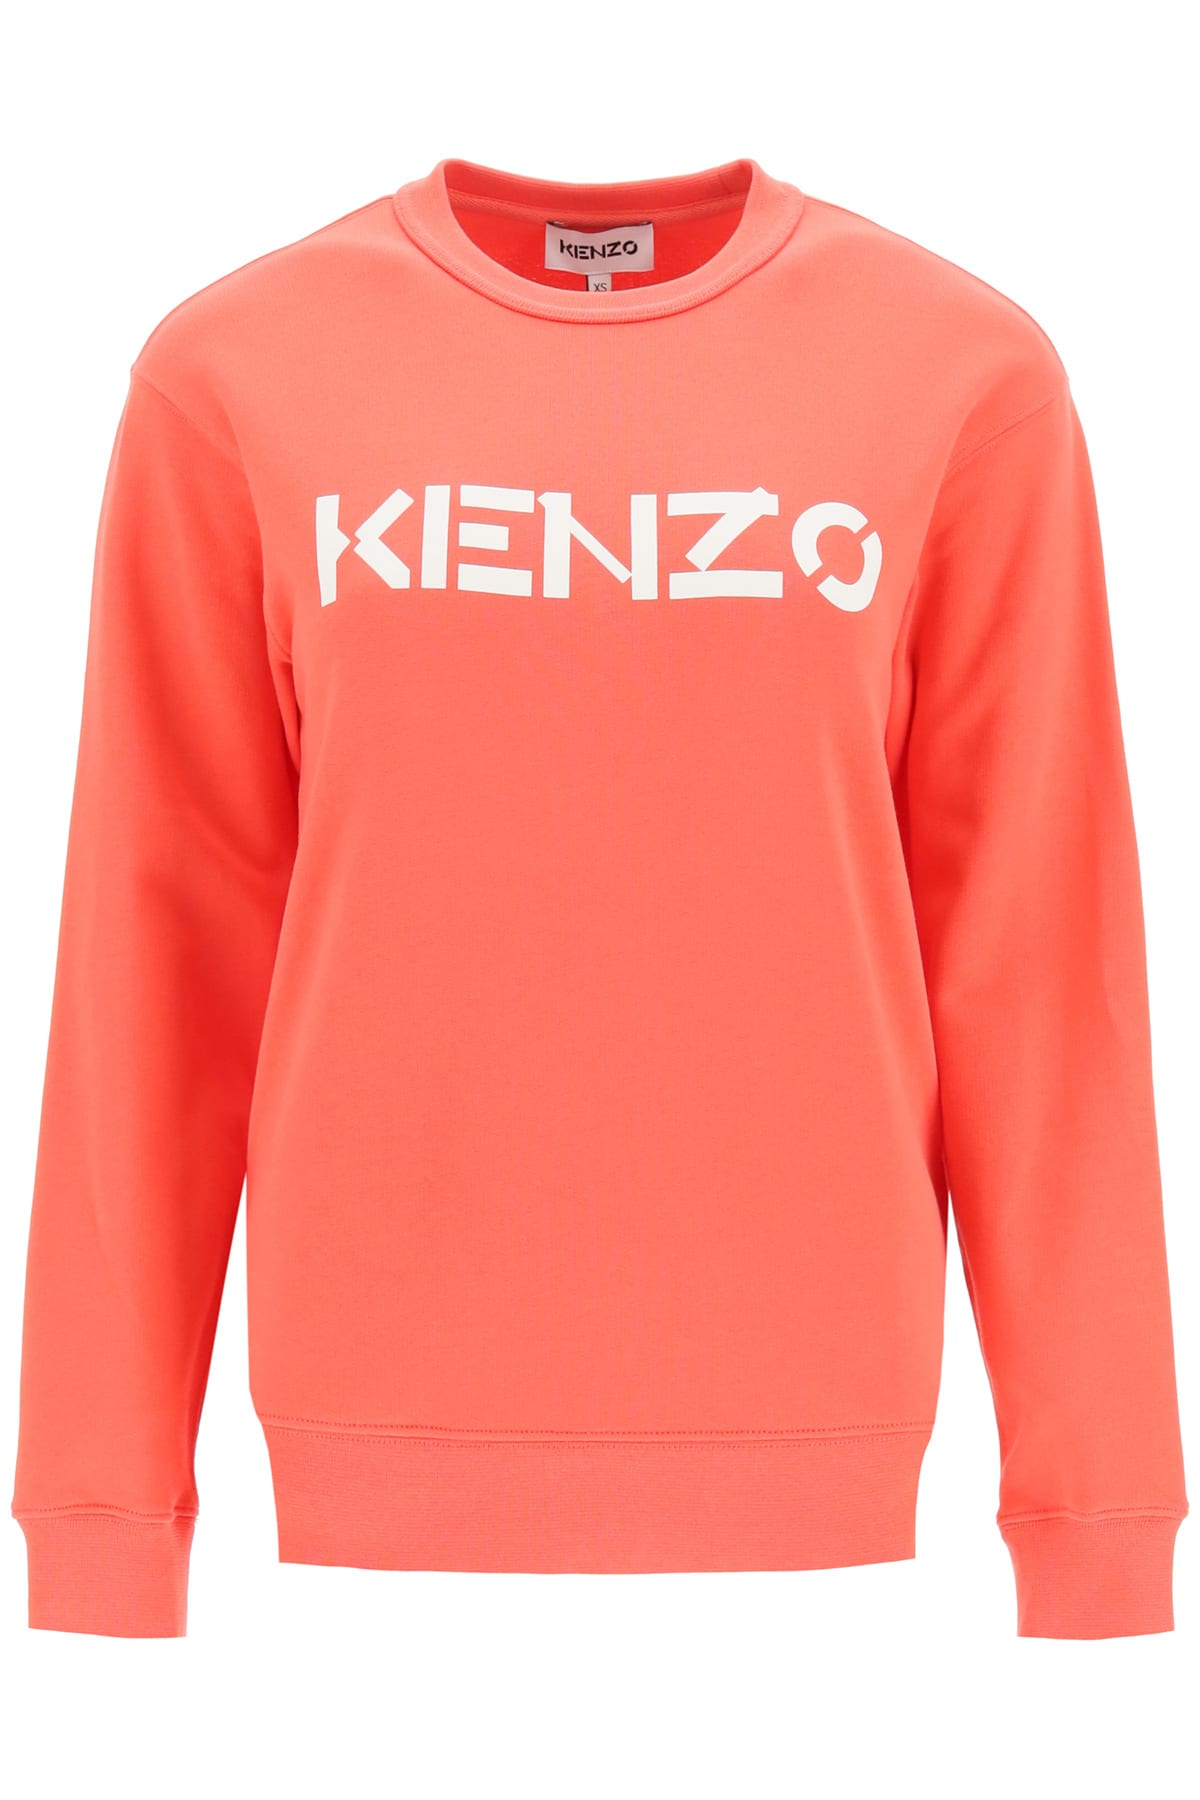 Kenzo Sweatshirt With Logo Print